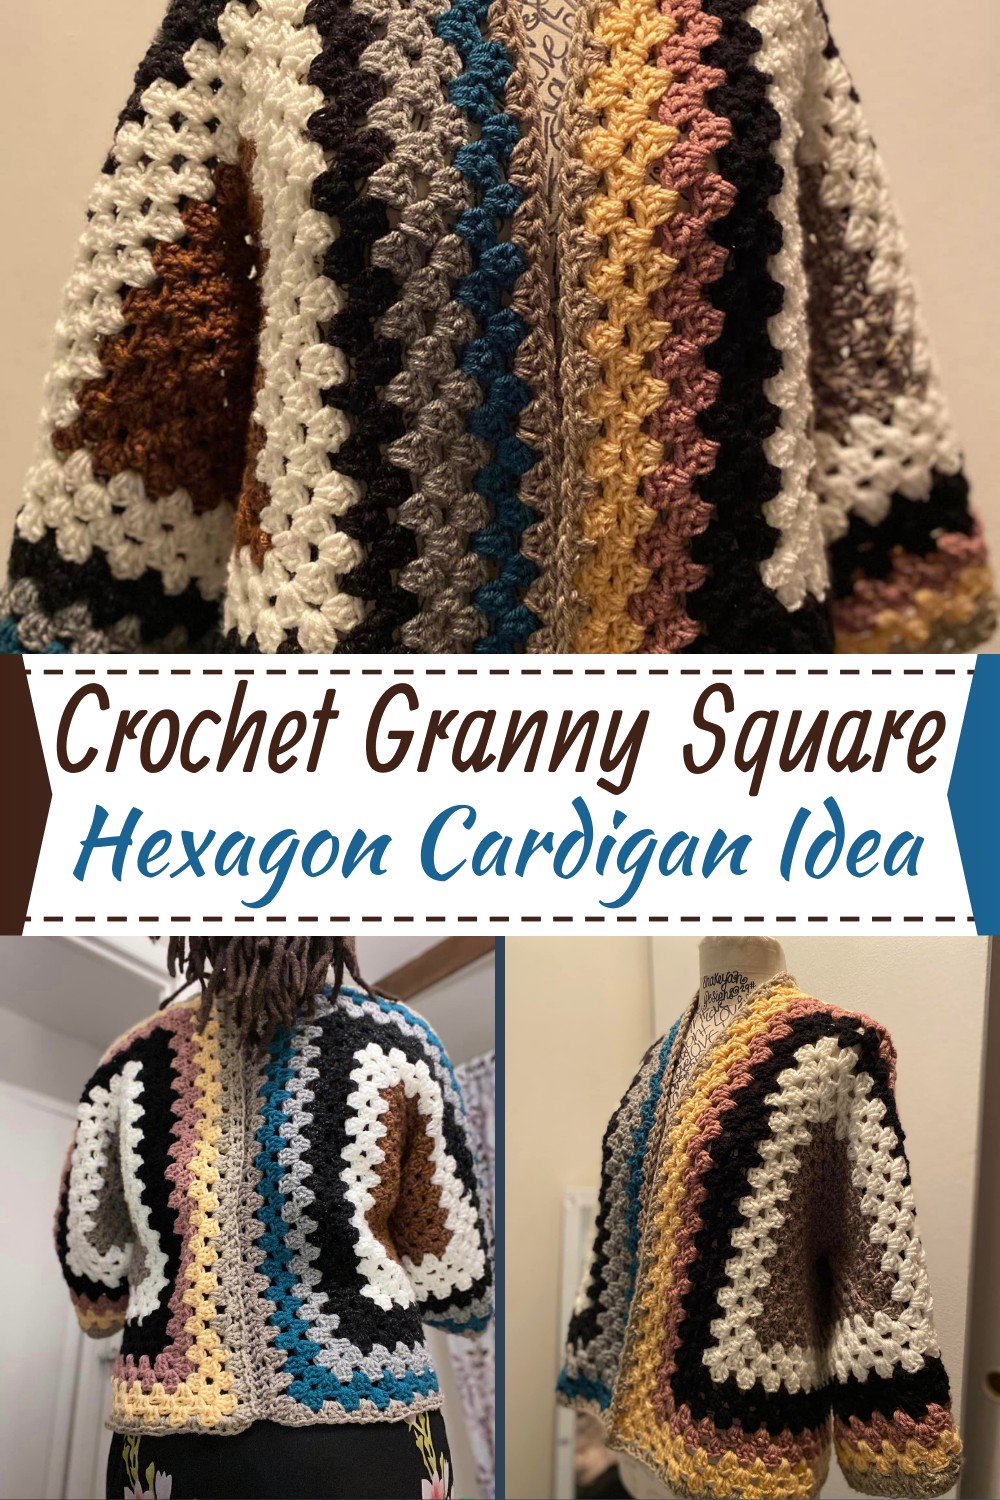 Crochet Hexagon Granny Square Cardigan Idea